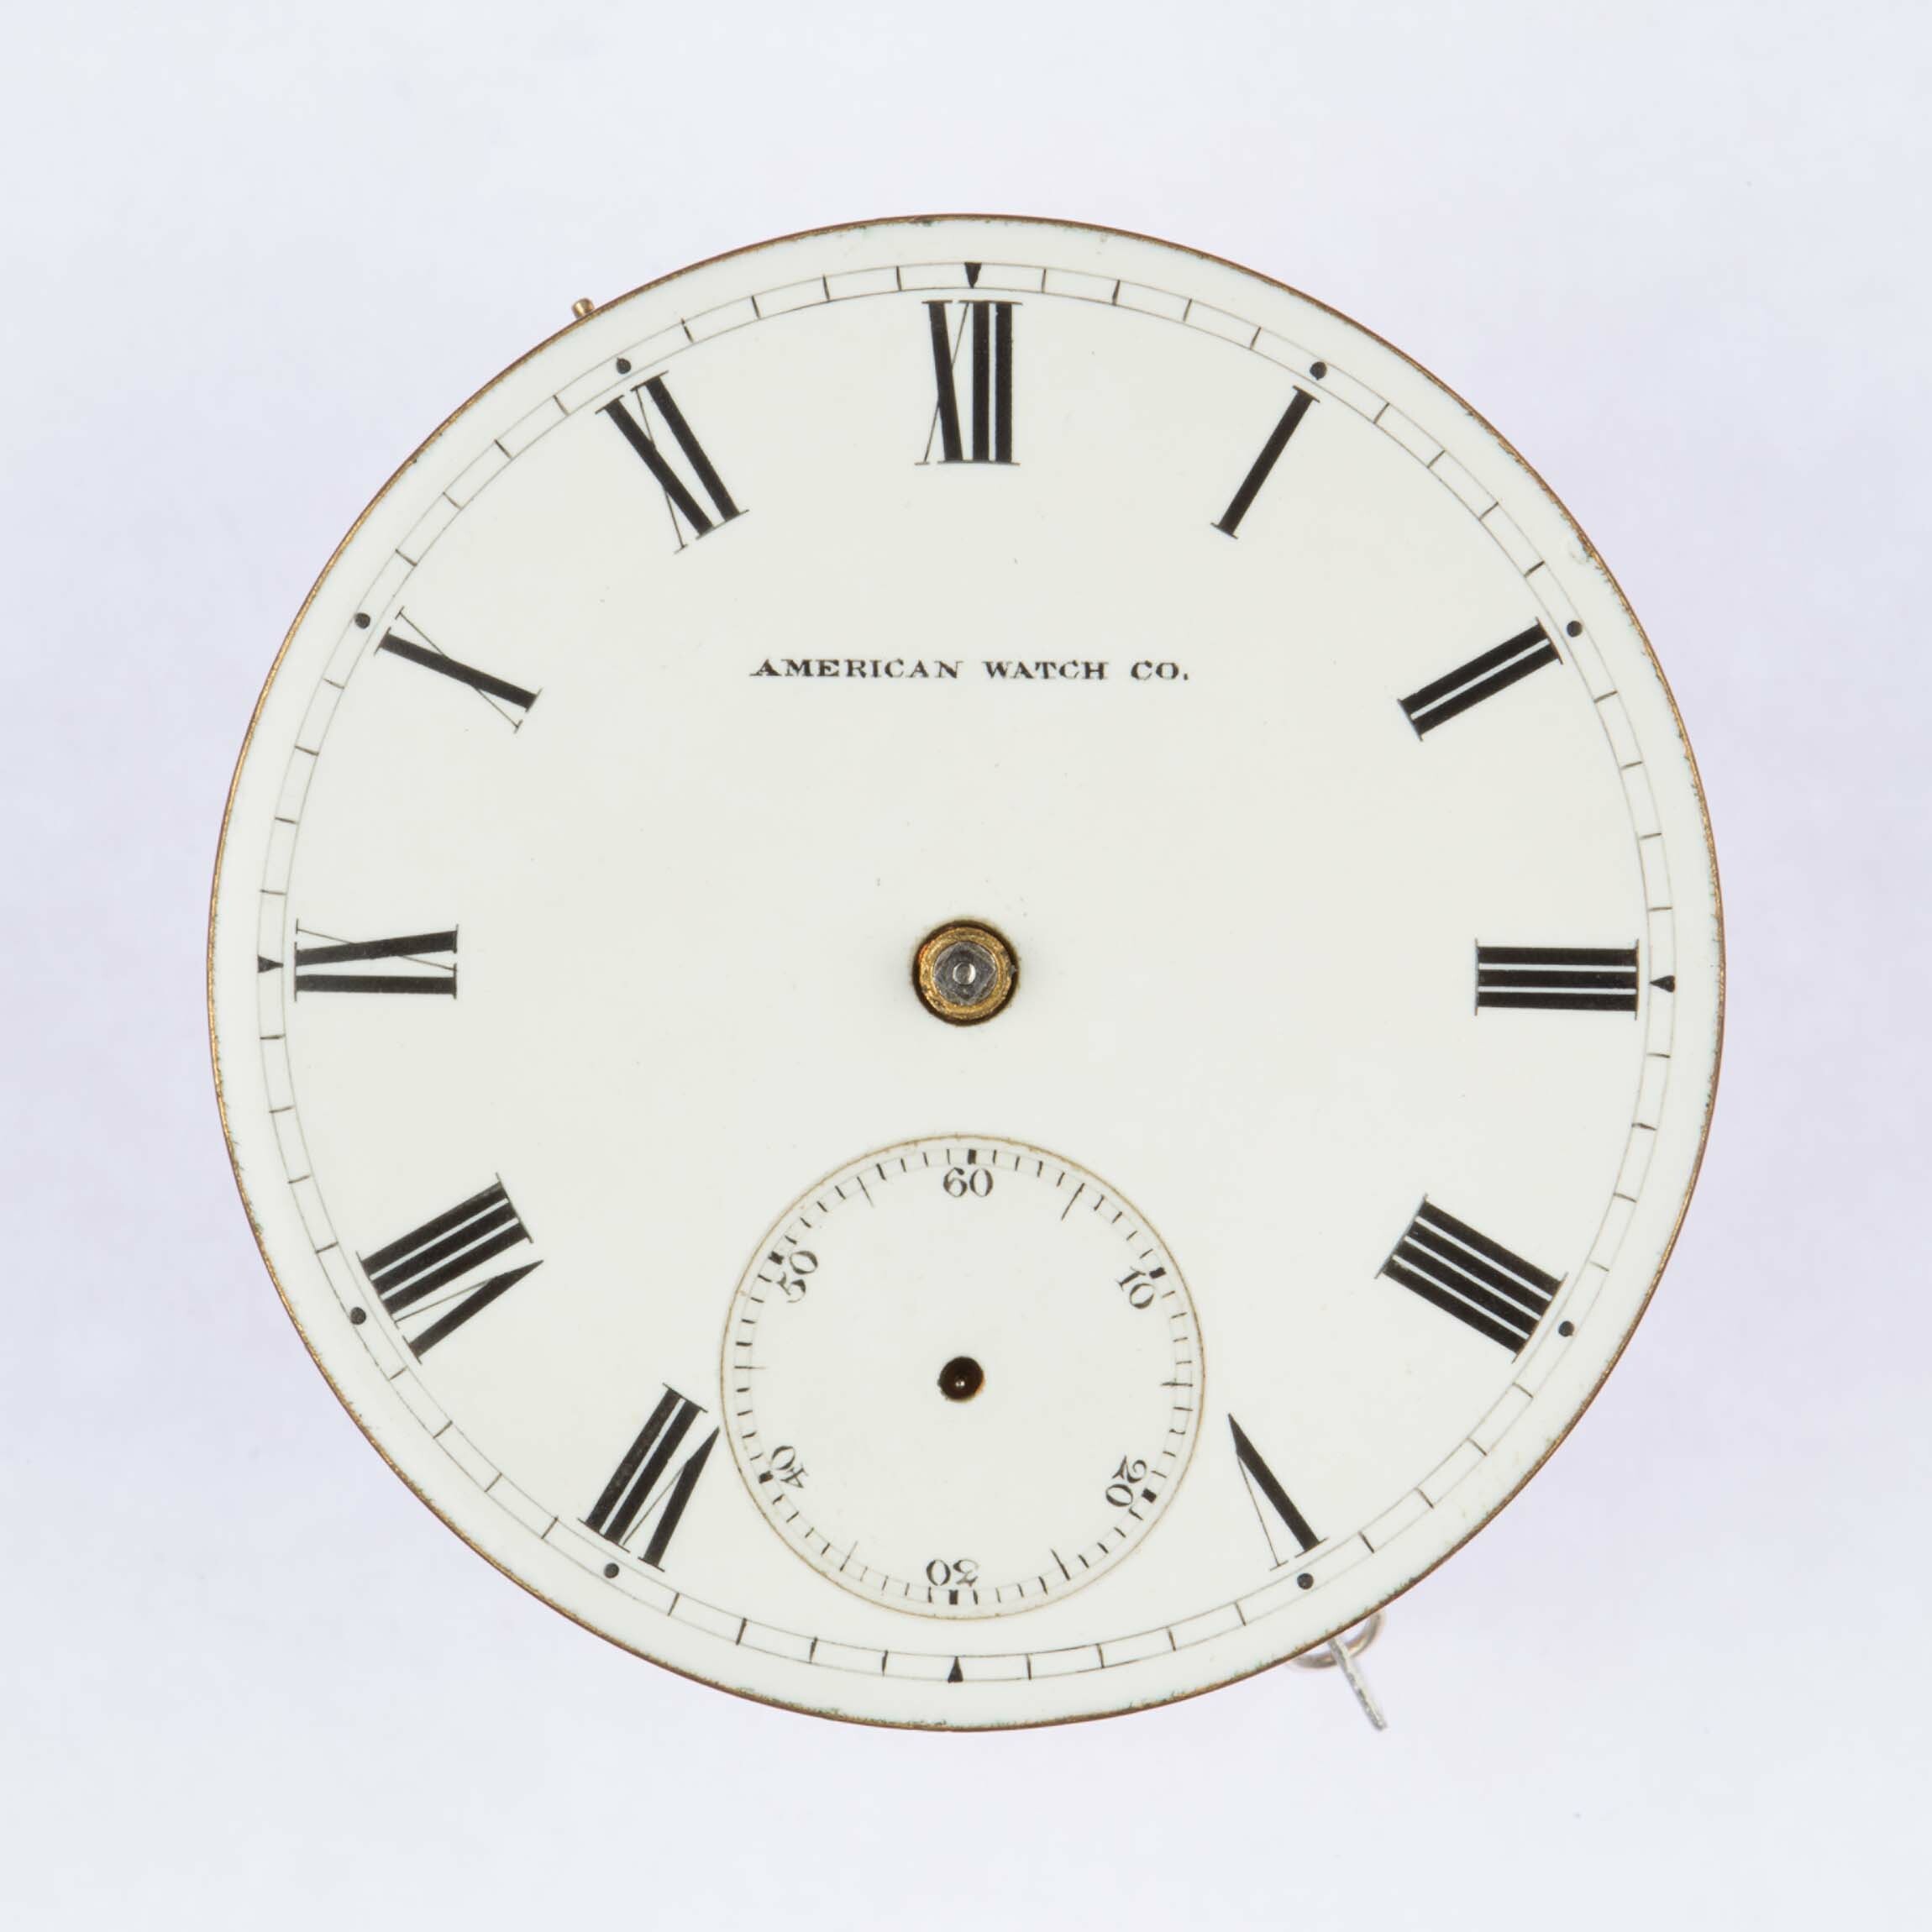 Taschenuhr American Watch Co., Waltham (USA), 1877 (Deutsches Uhrenmuseum CC BY-SA)